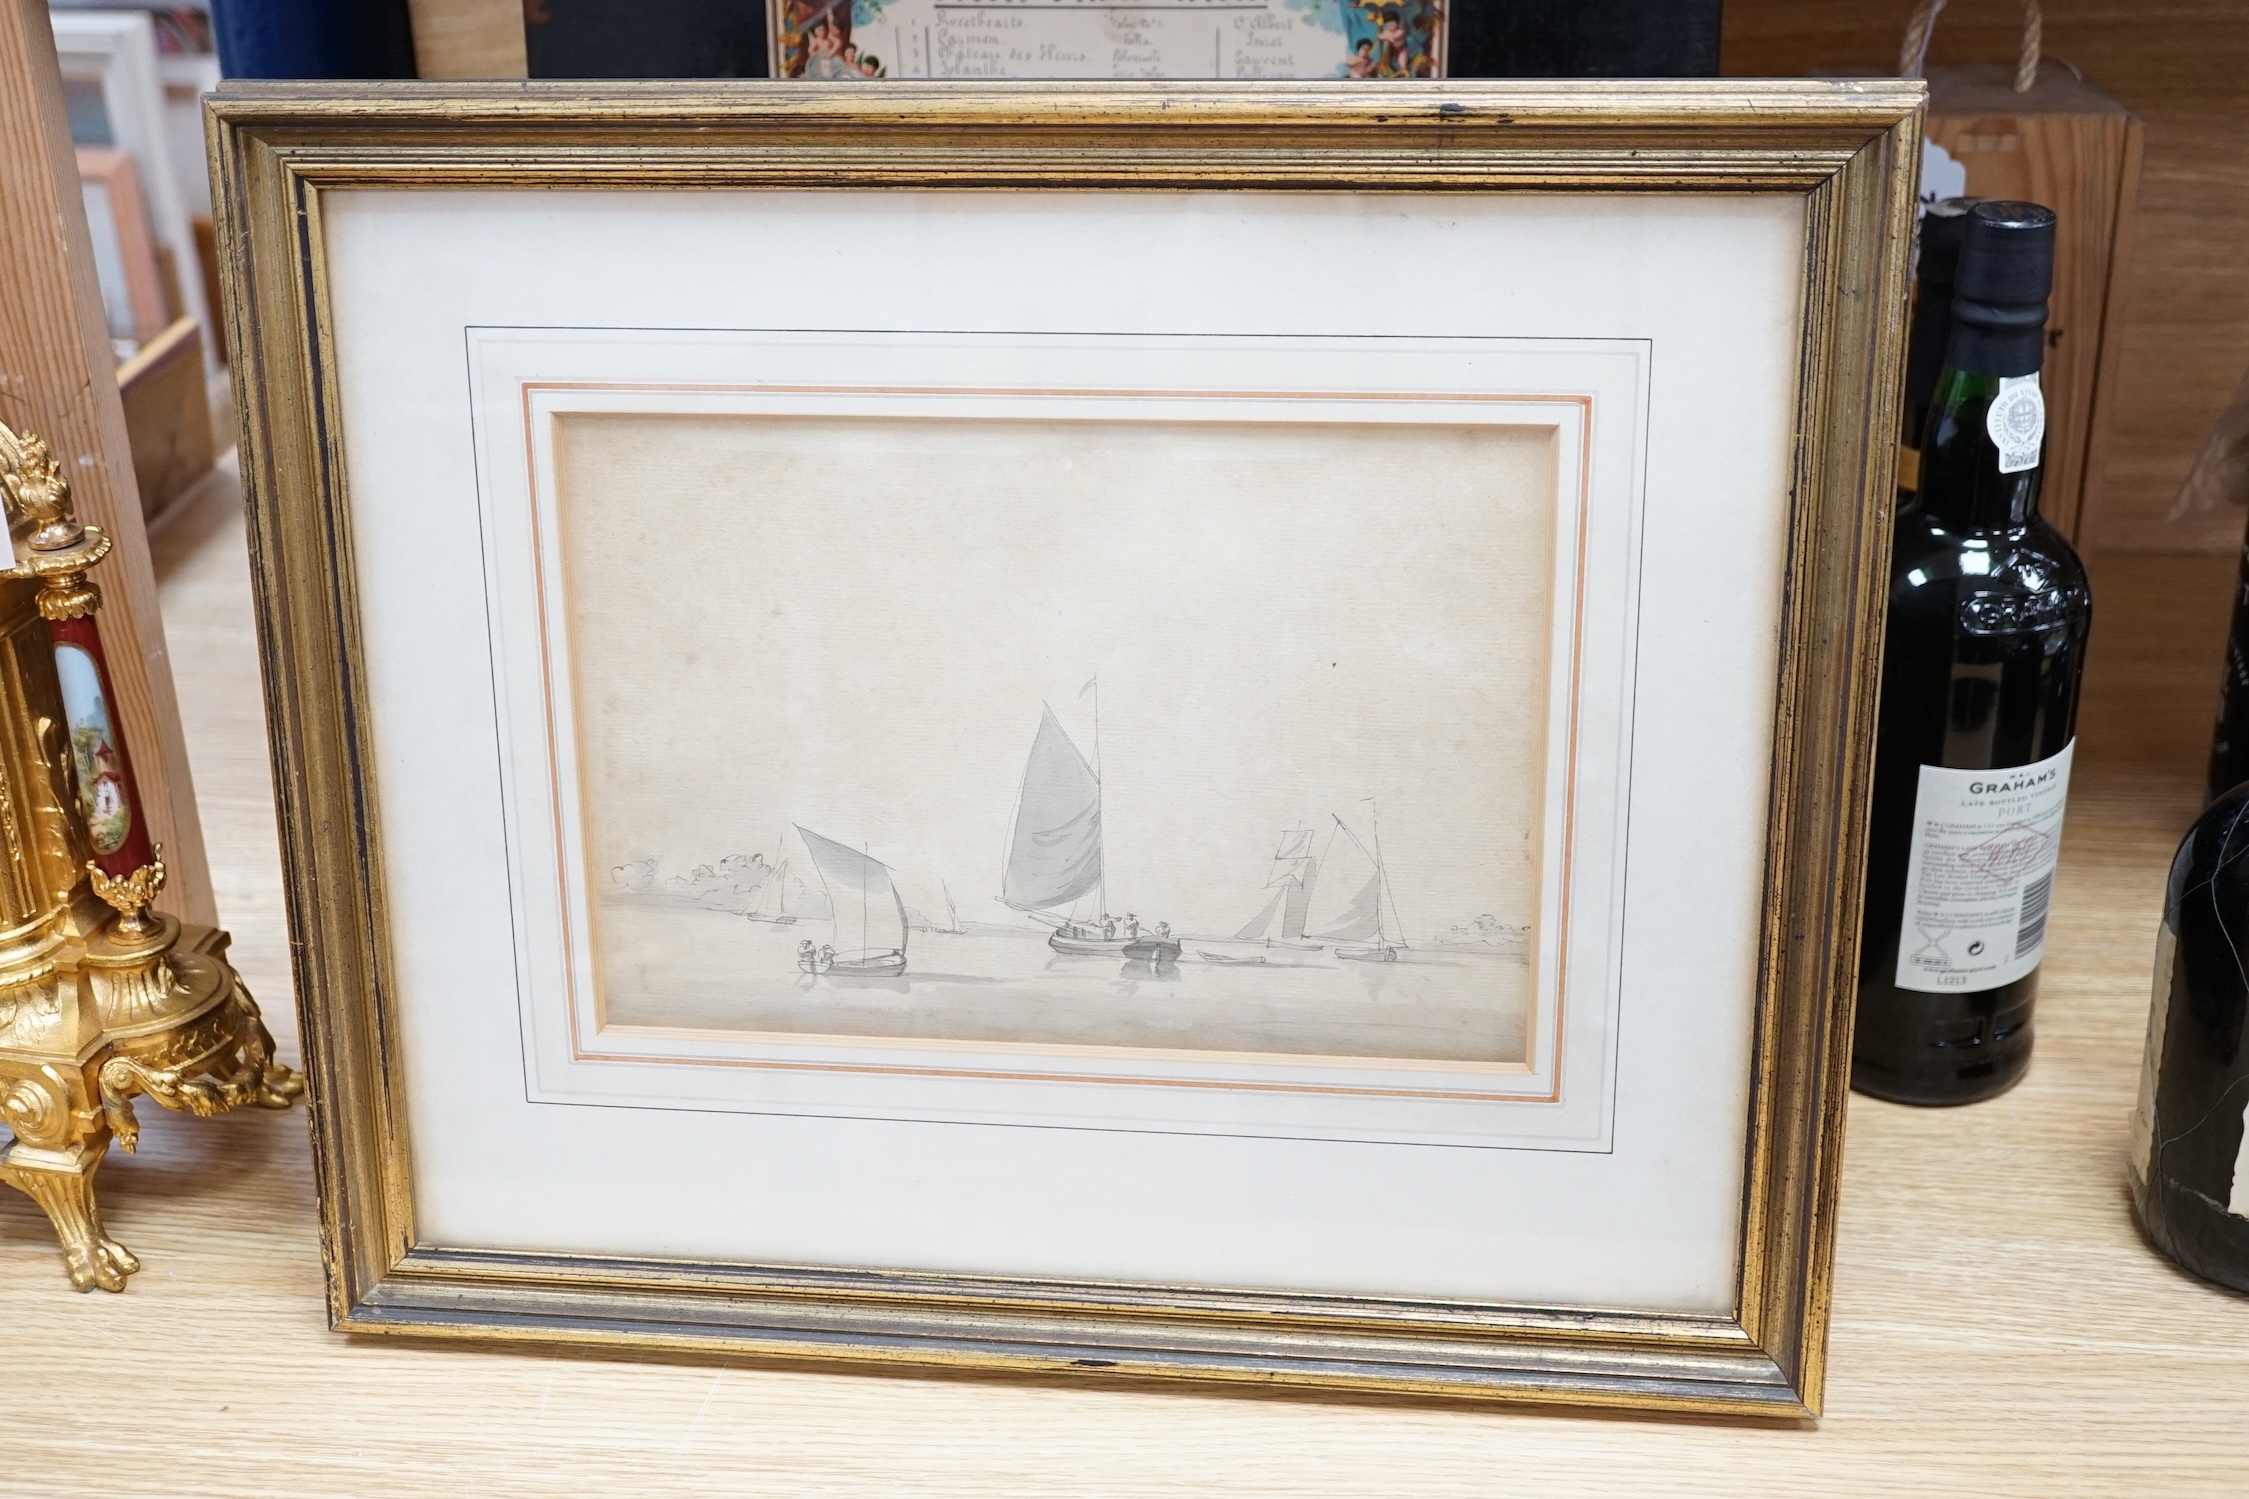 William Anderson (1757-1837), monochrome watercolour, Sailing boats, 18 x 27cm. Condition - fair, discolouration